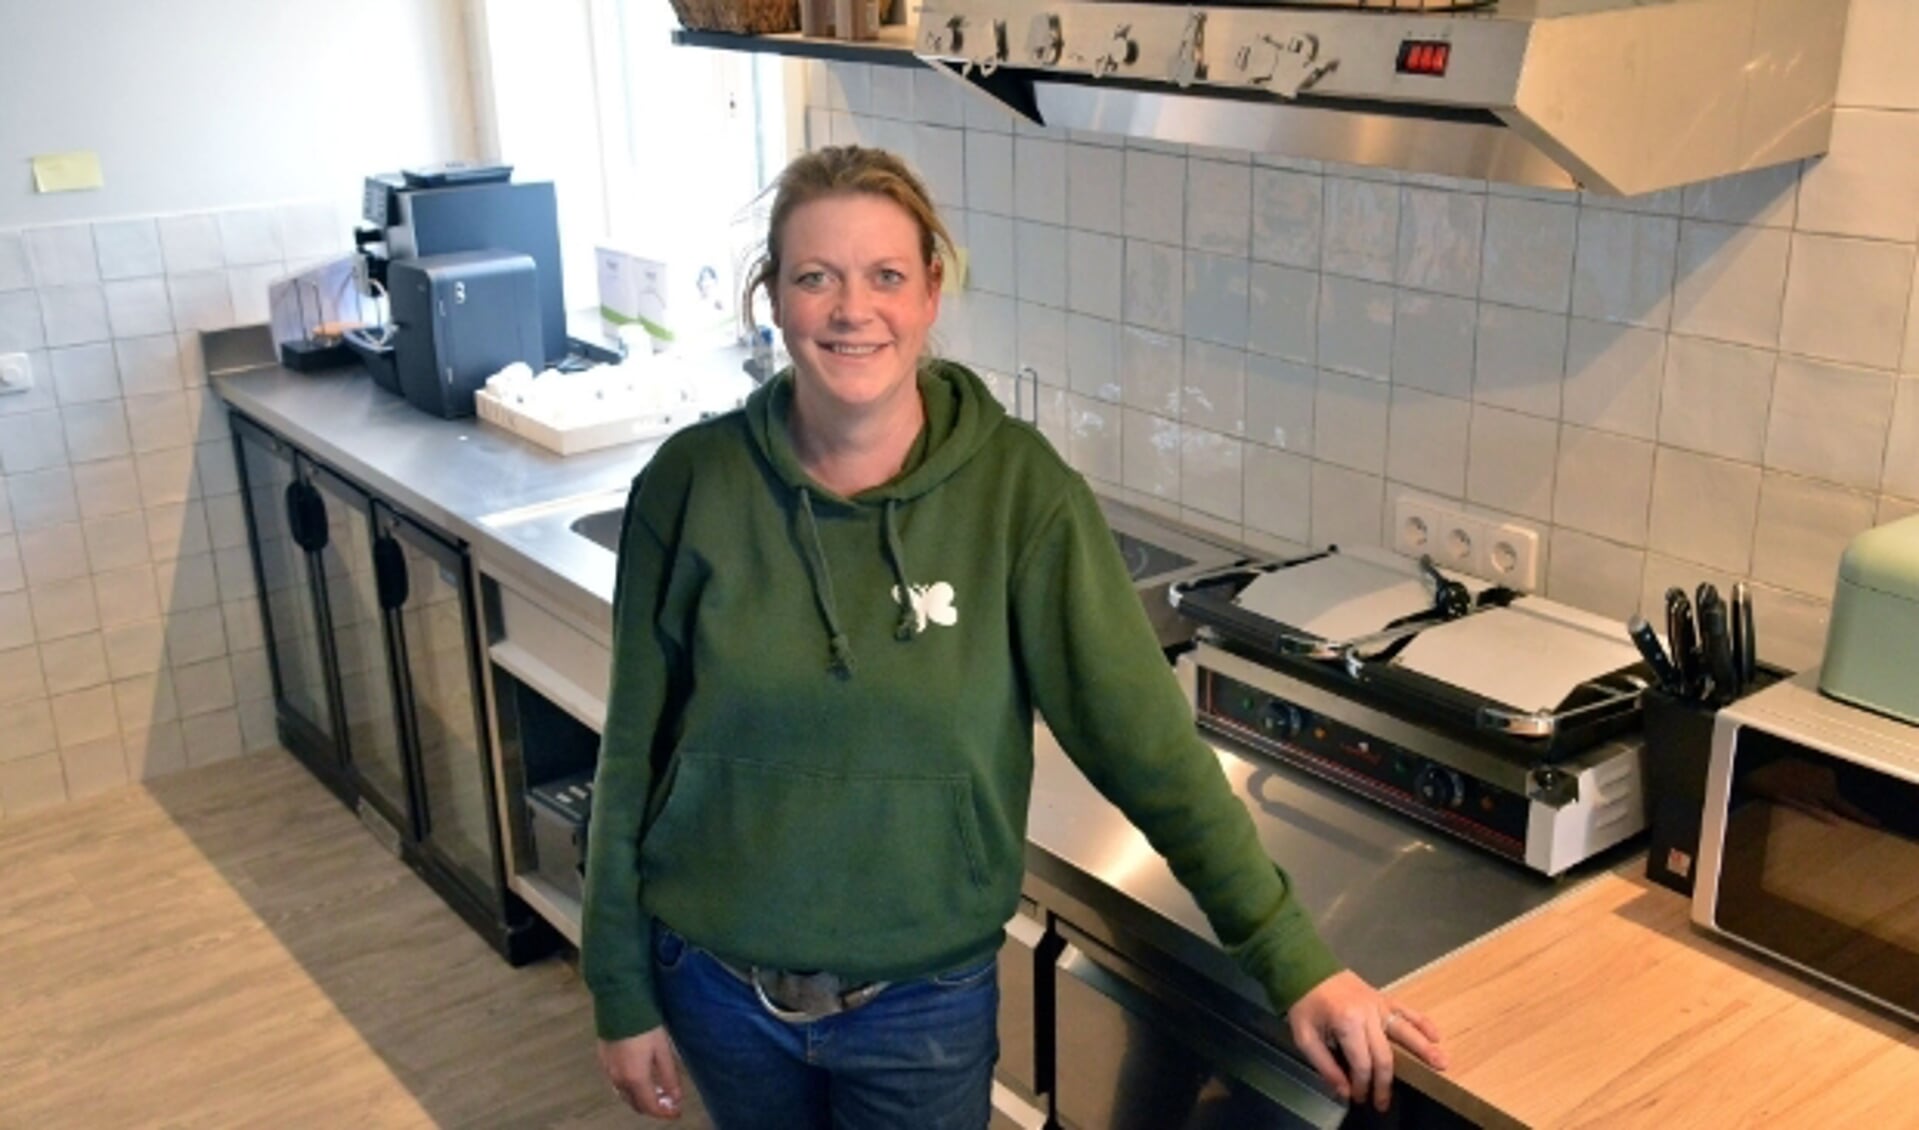 Patricia Vlooswijk in de nieuwe keuken van zorgboerderij Doruvael Buitenzorg op Blokland. (Foto: Paul van den Dungen)